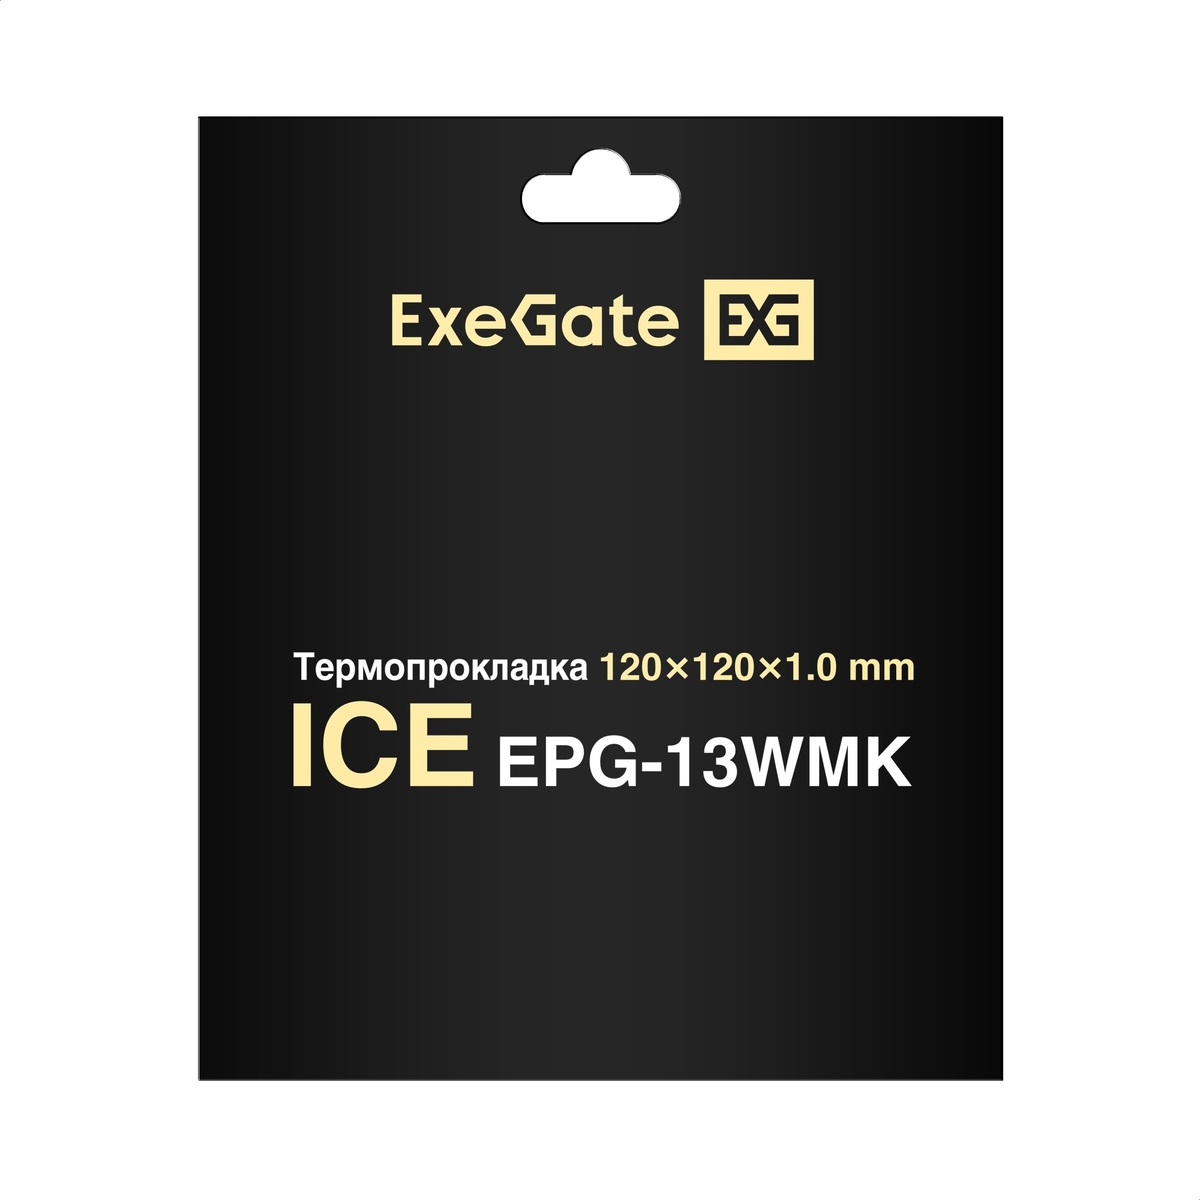  ExeGate Ice EPG-13WMK 120x120x1.0